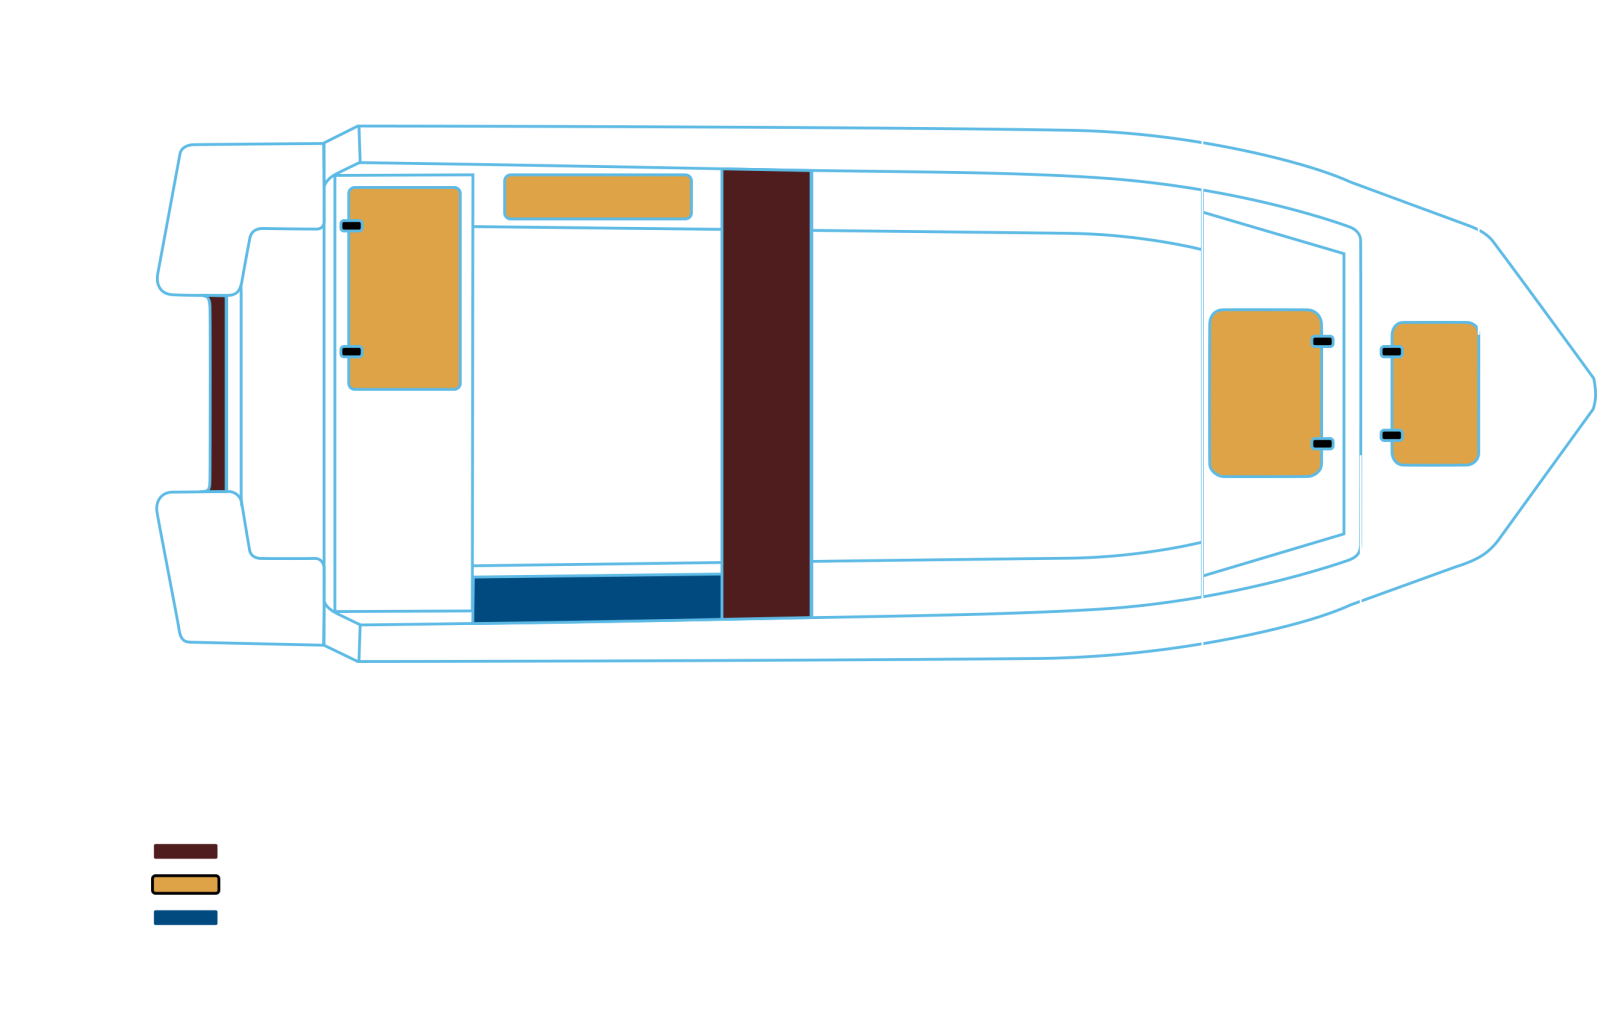 Swimmer 370